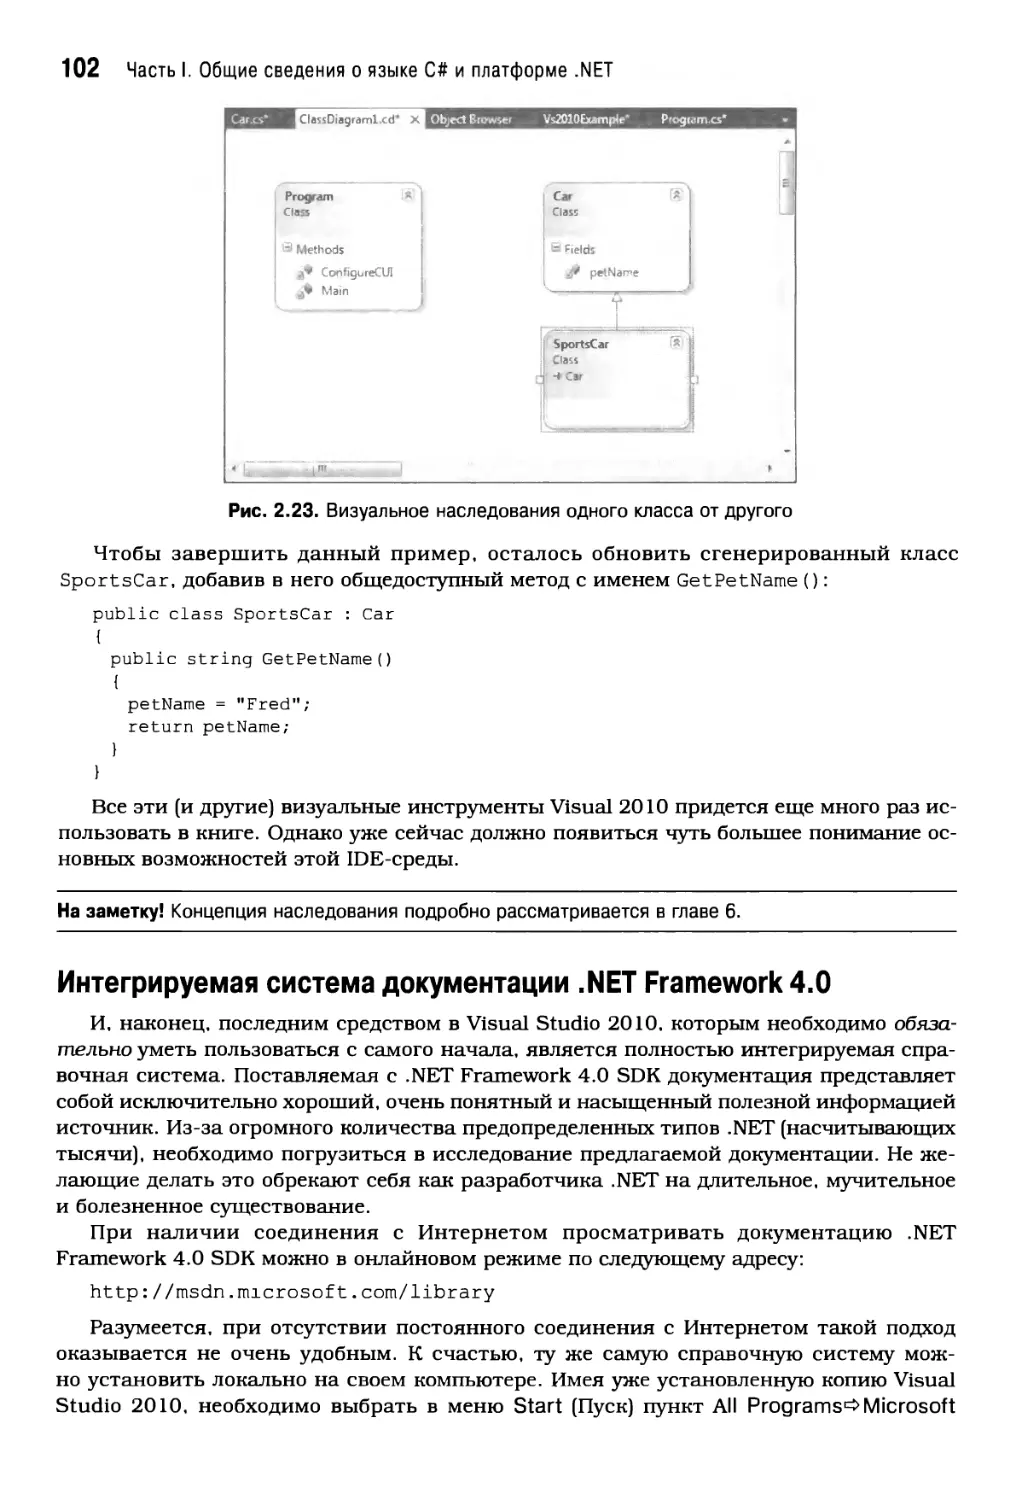 Интегрируемая система документации . NET Framework 4.0